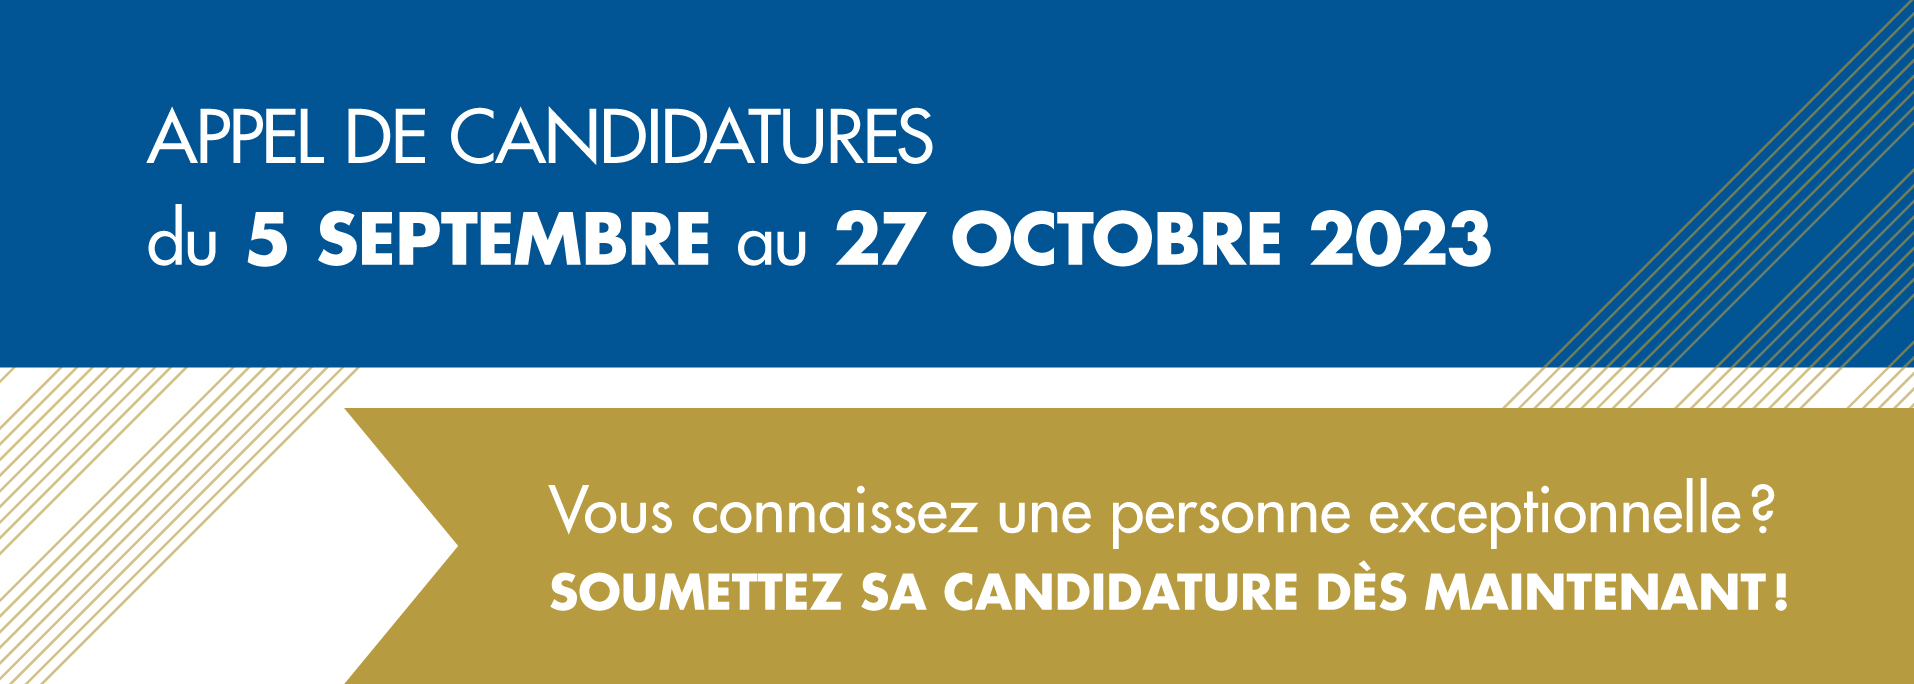 Appel de candidatures du 5 septembre au 27 octobre 2023.